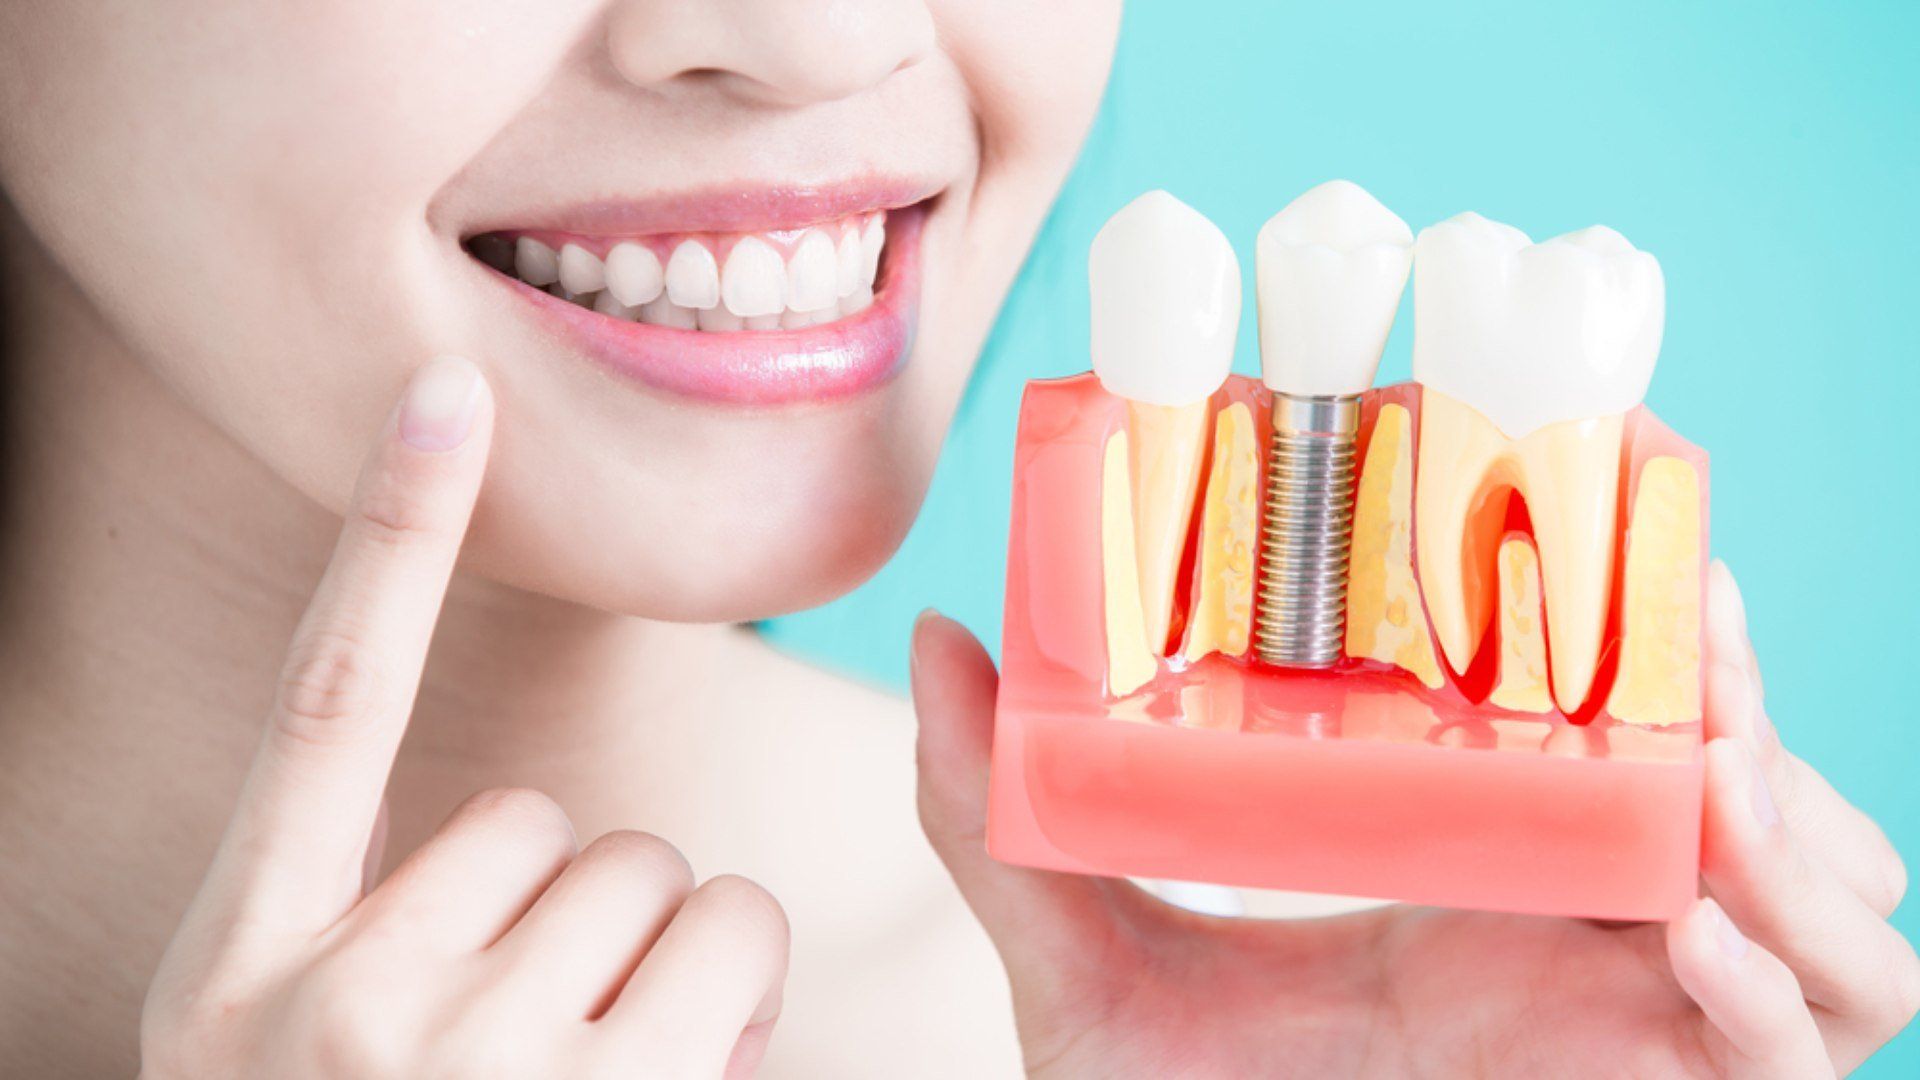 tudo sobre implantes dentarios